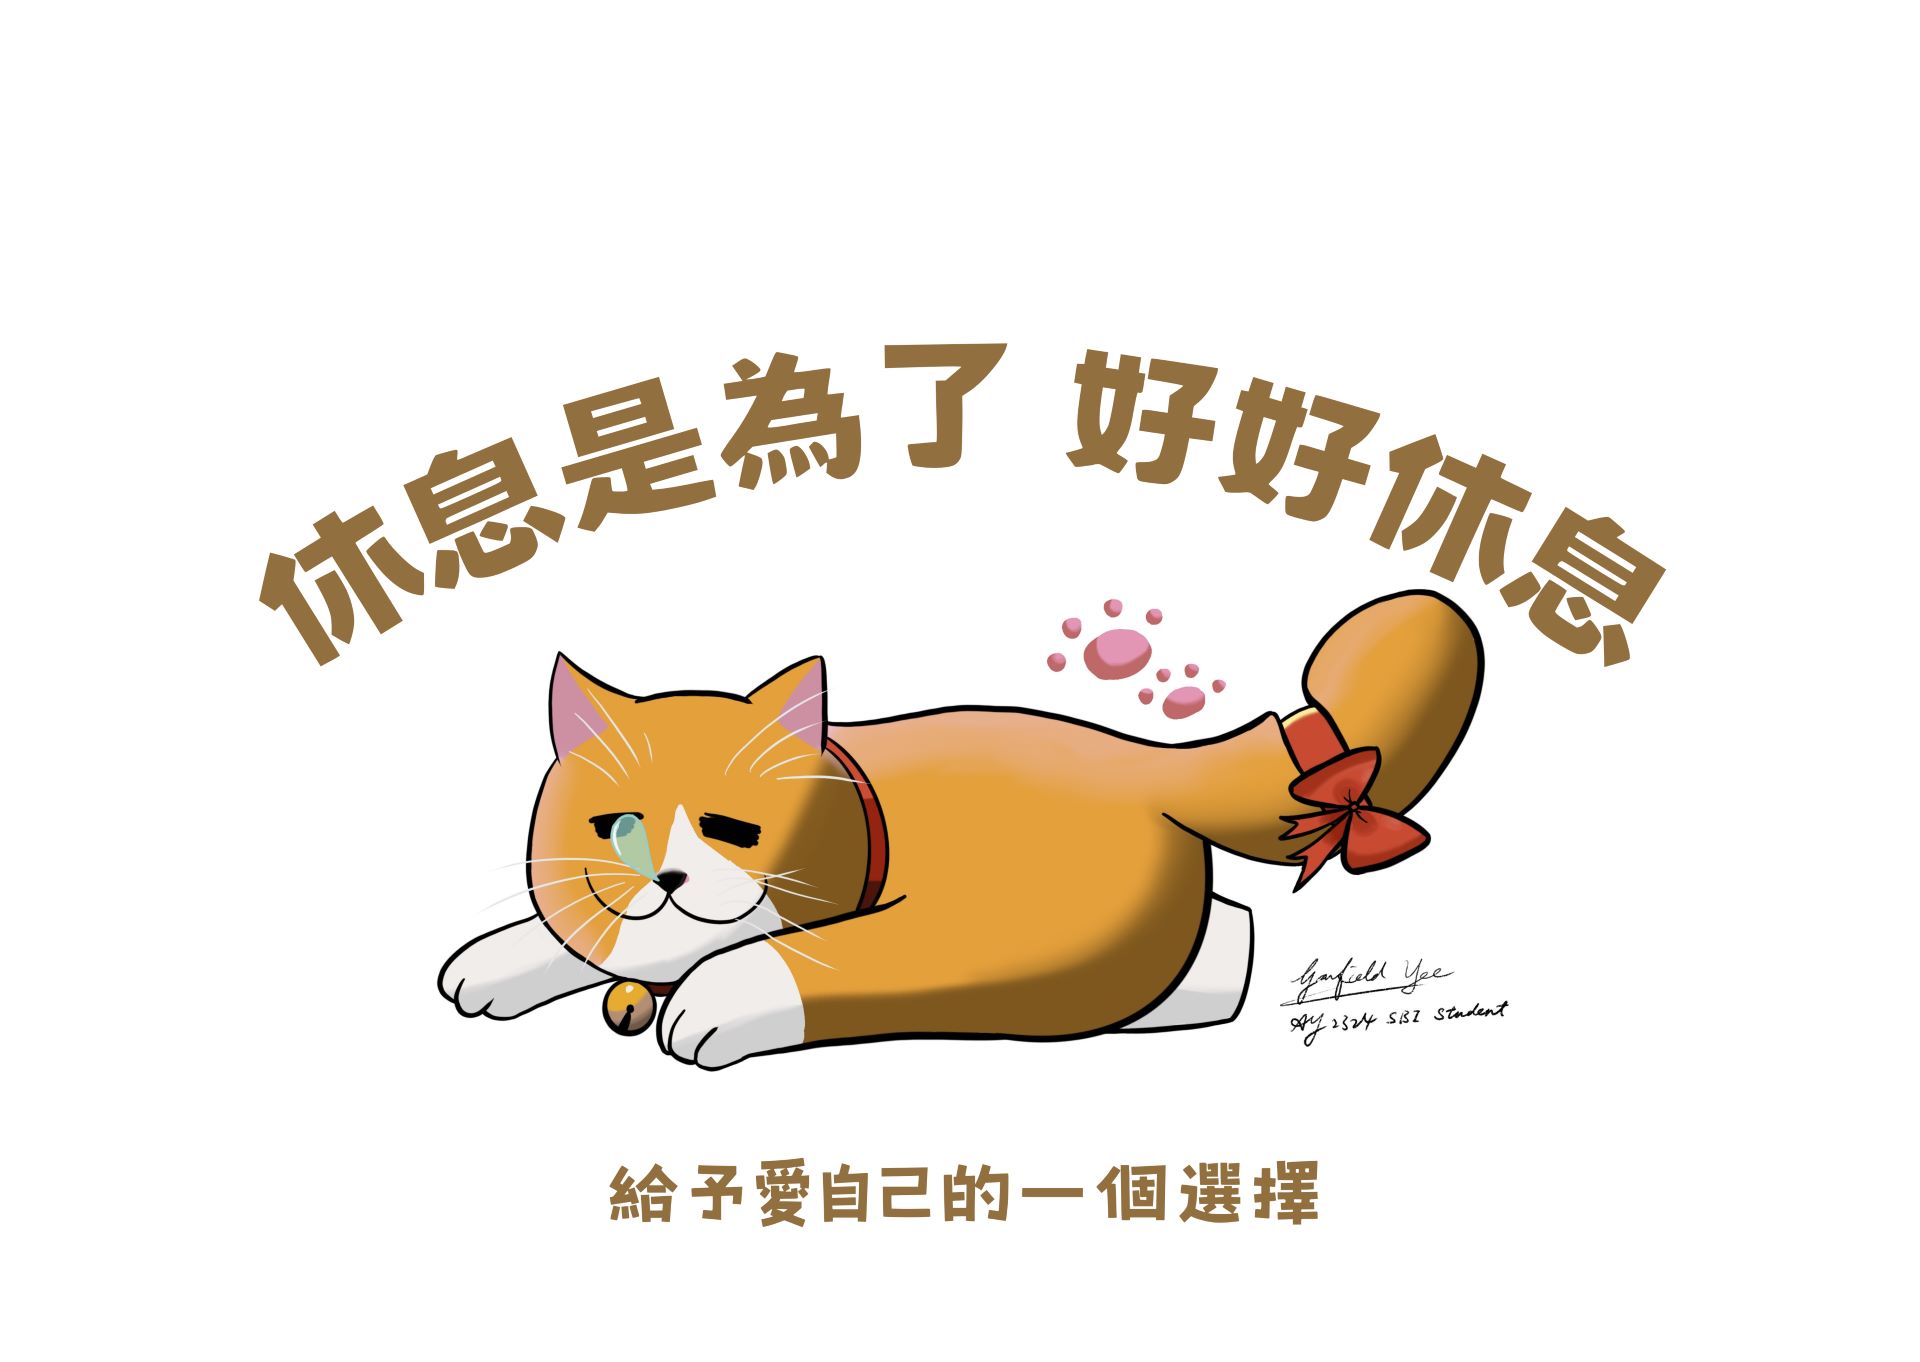 Garfield YEE's poster 2